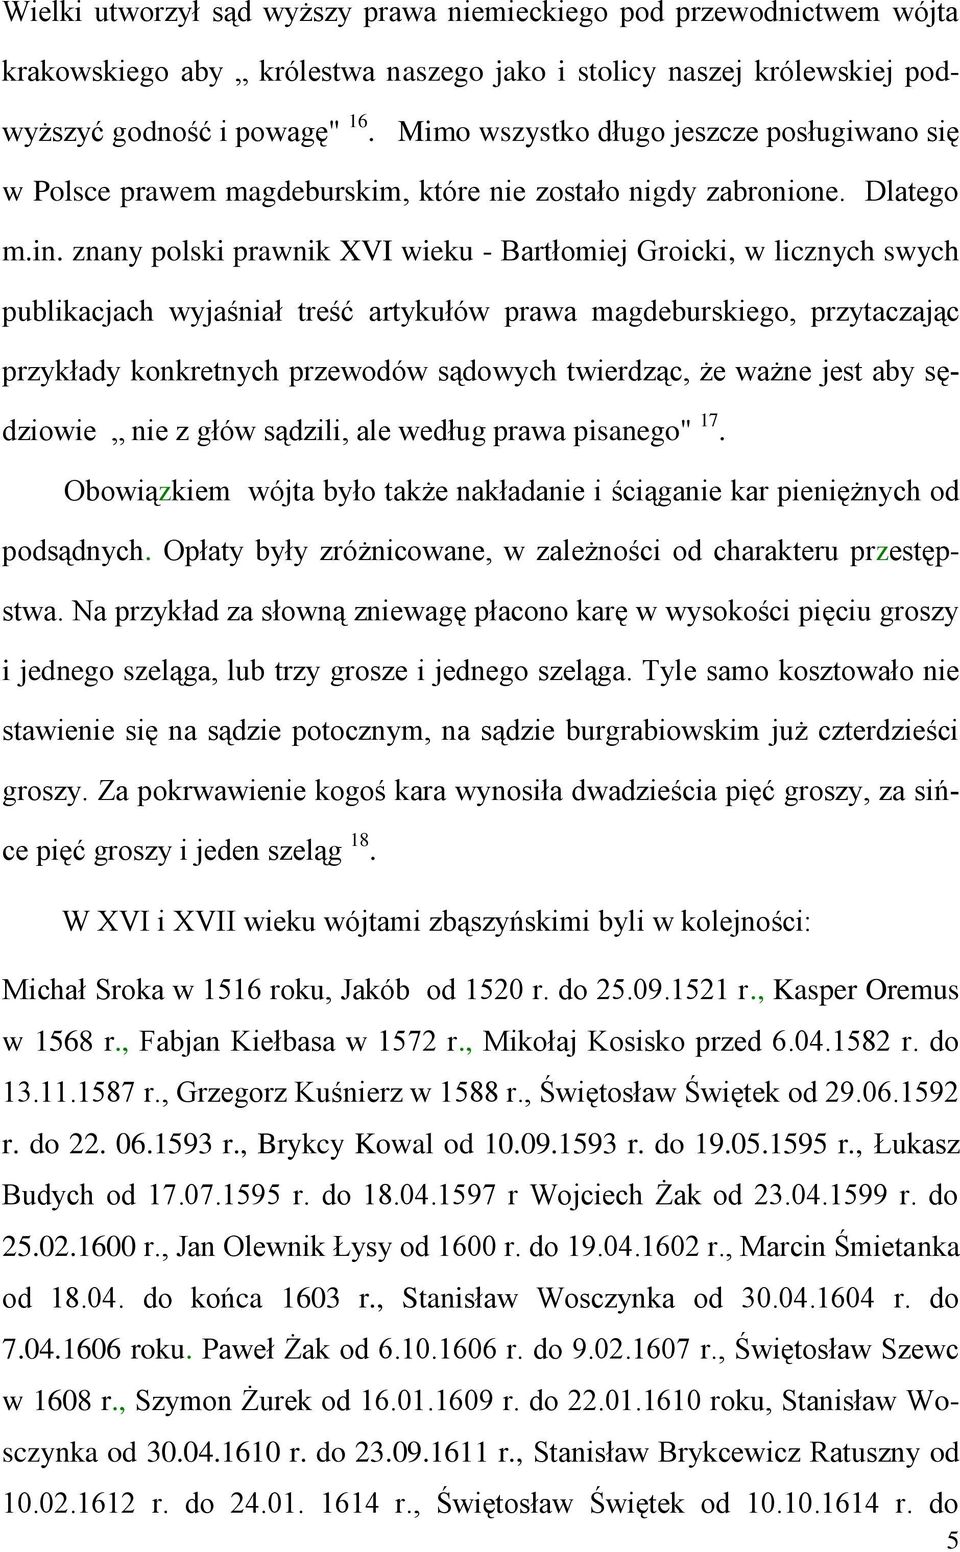 znany polski prawnik XVI wieku - Bartłomiej Groicki, w licznych swych publikacjach wyjaśniał treść artykułów prawa magdeburskiego, przytaczając przykłady konkretnych przewodów sądowych twierdząc, że